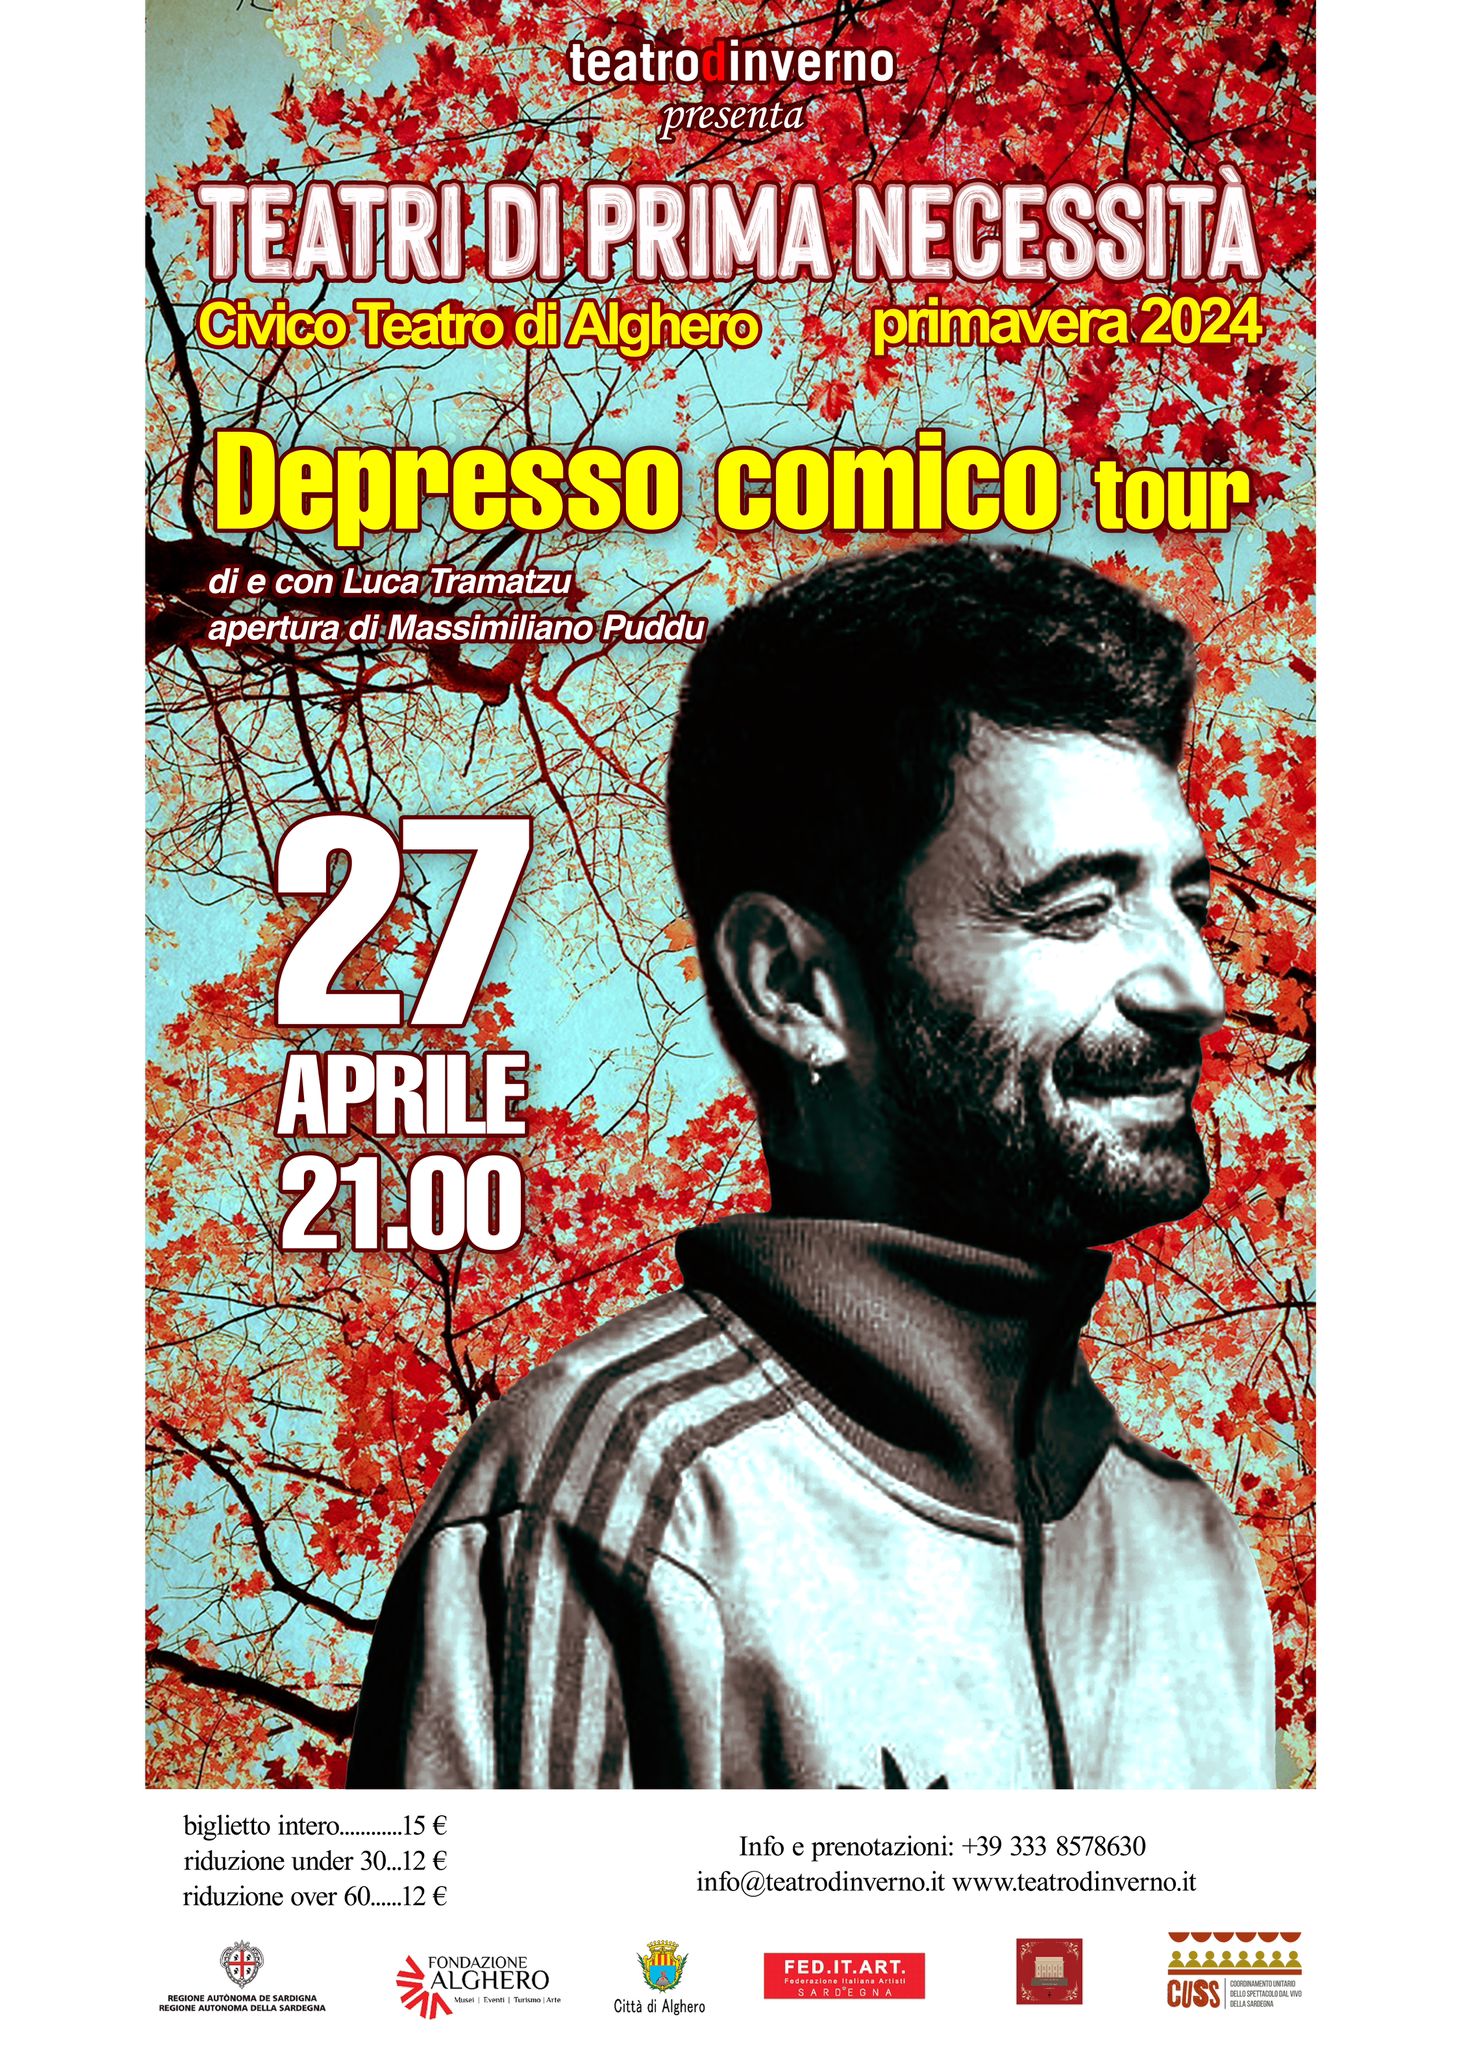 Appuntamenti, eventi, spettacoli Alghero: Depresso Comico Tour - Compagnia Teatro d'Inverno